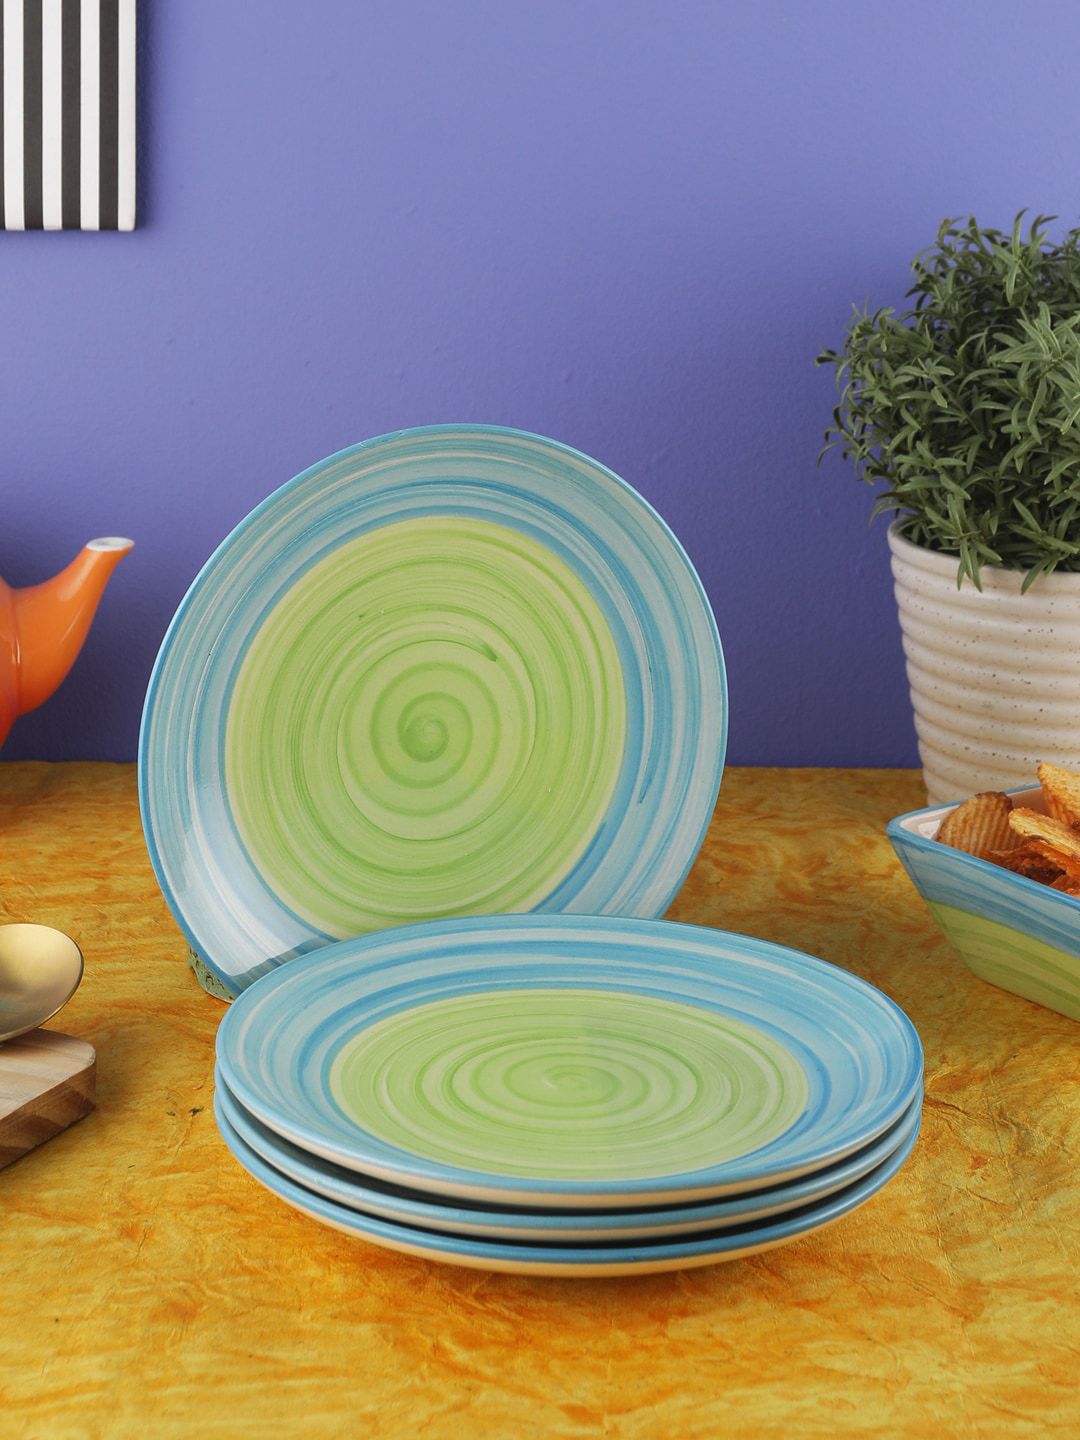 VarEesha Green & Blue 4-Pieces Solid Ceramic Plates Set Price in India